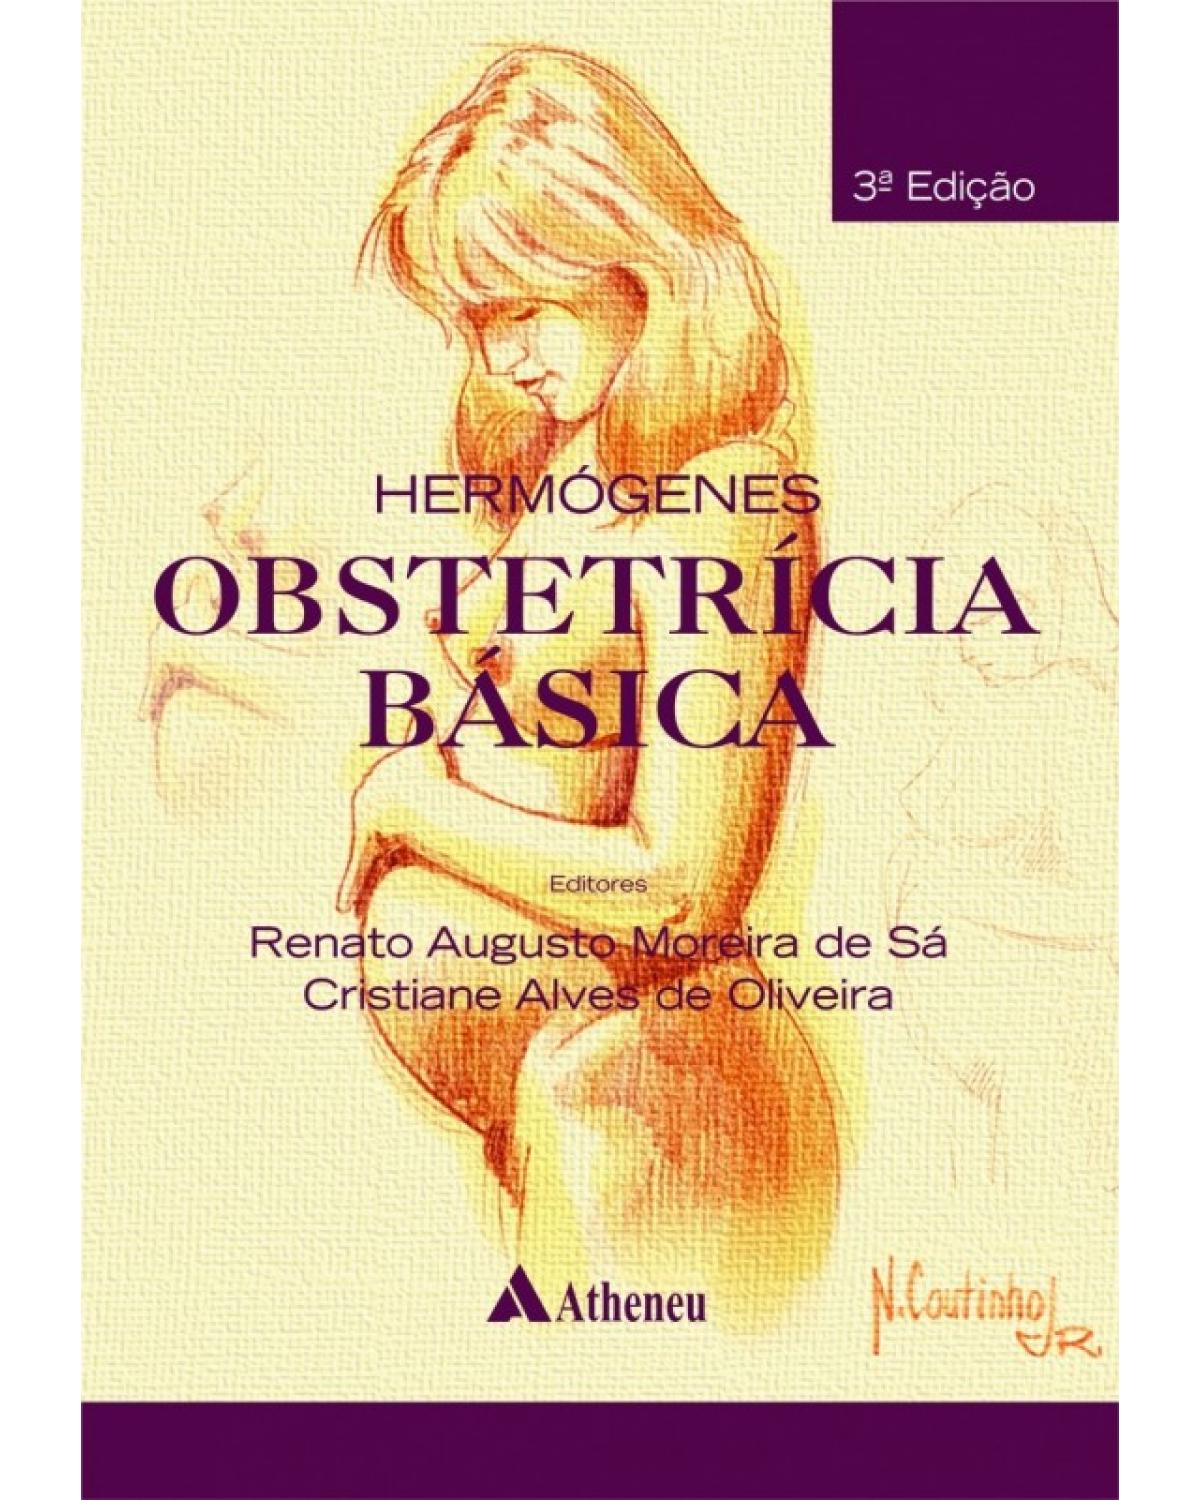 Hermógenes - Obstetrícia básica - 3ª Edição | 2015